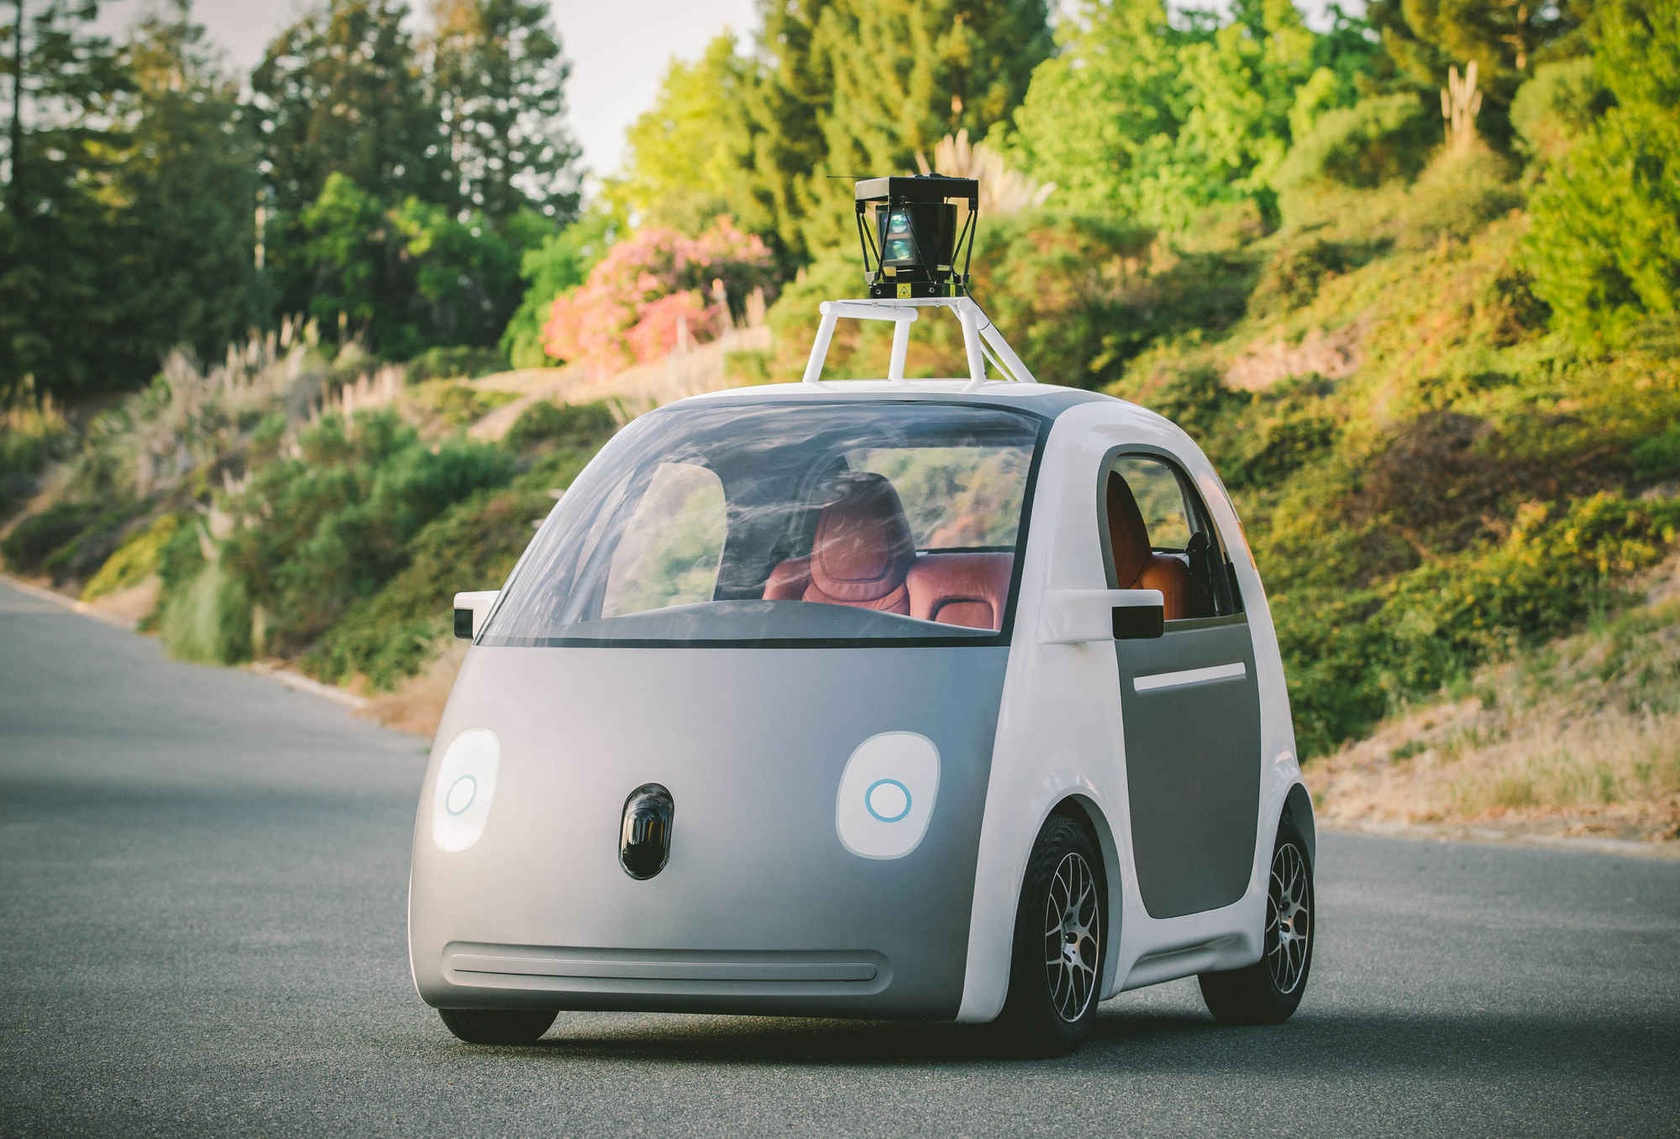 Samochód autonomiczny Google w niczym nie przypominał tradycyjnego auta